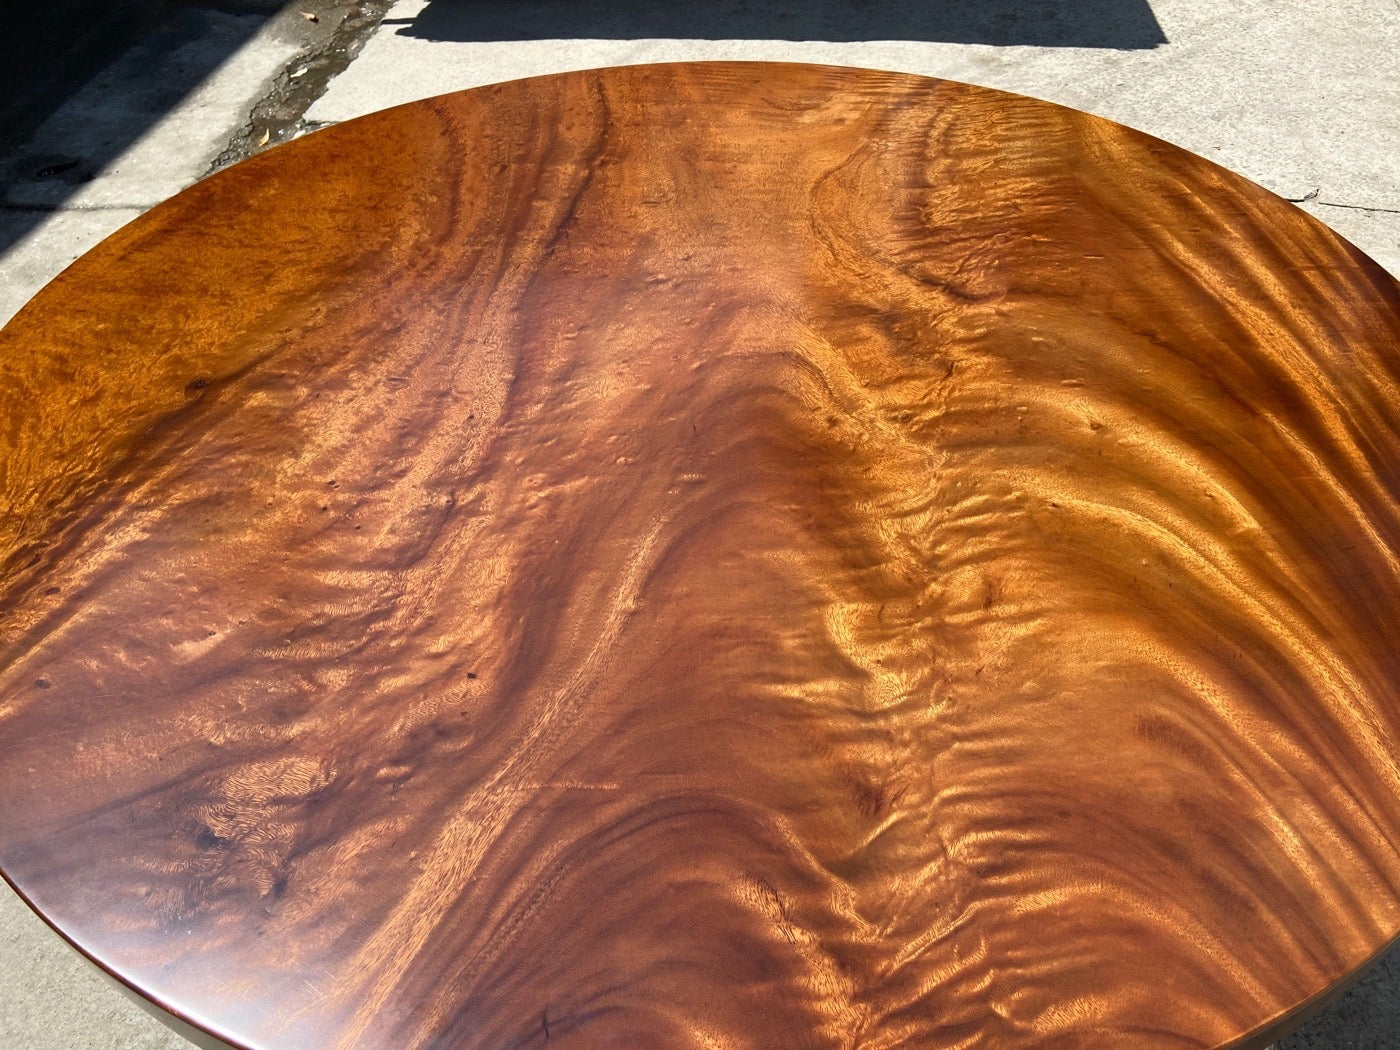 table ronde en bois, plateau de table rond en bois inachevé